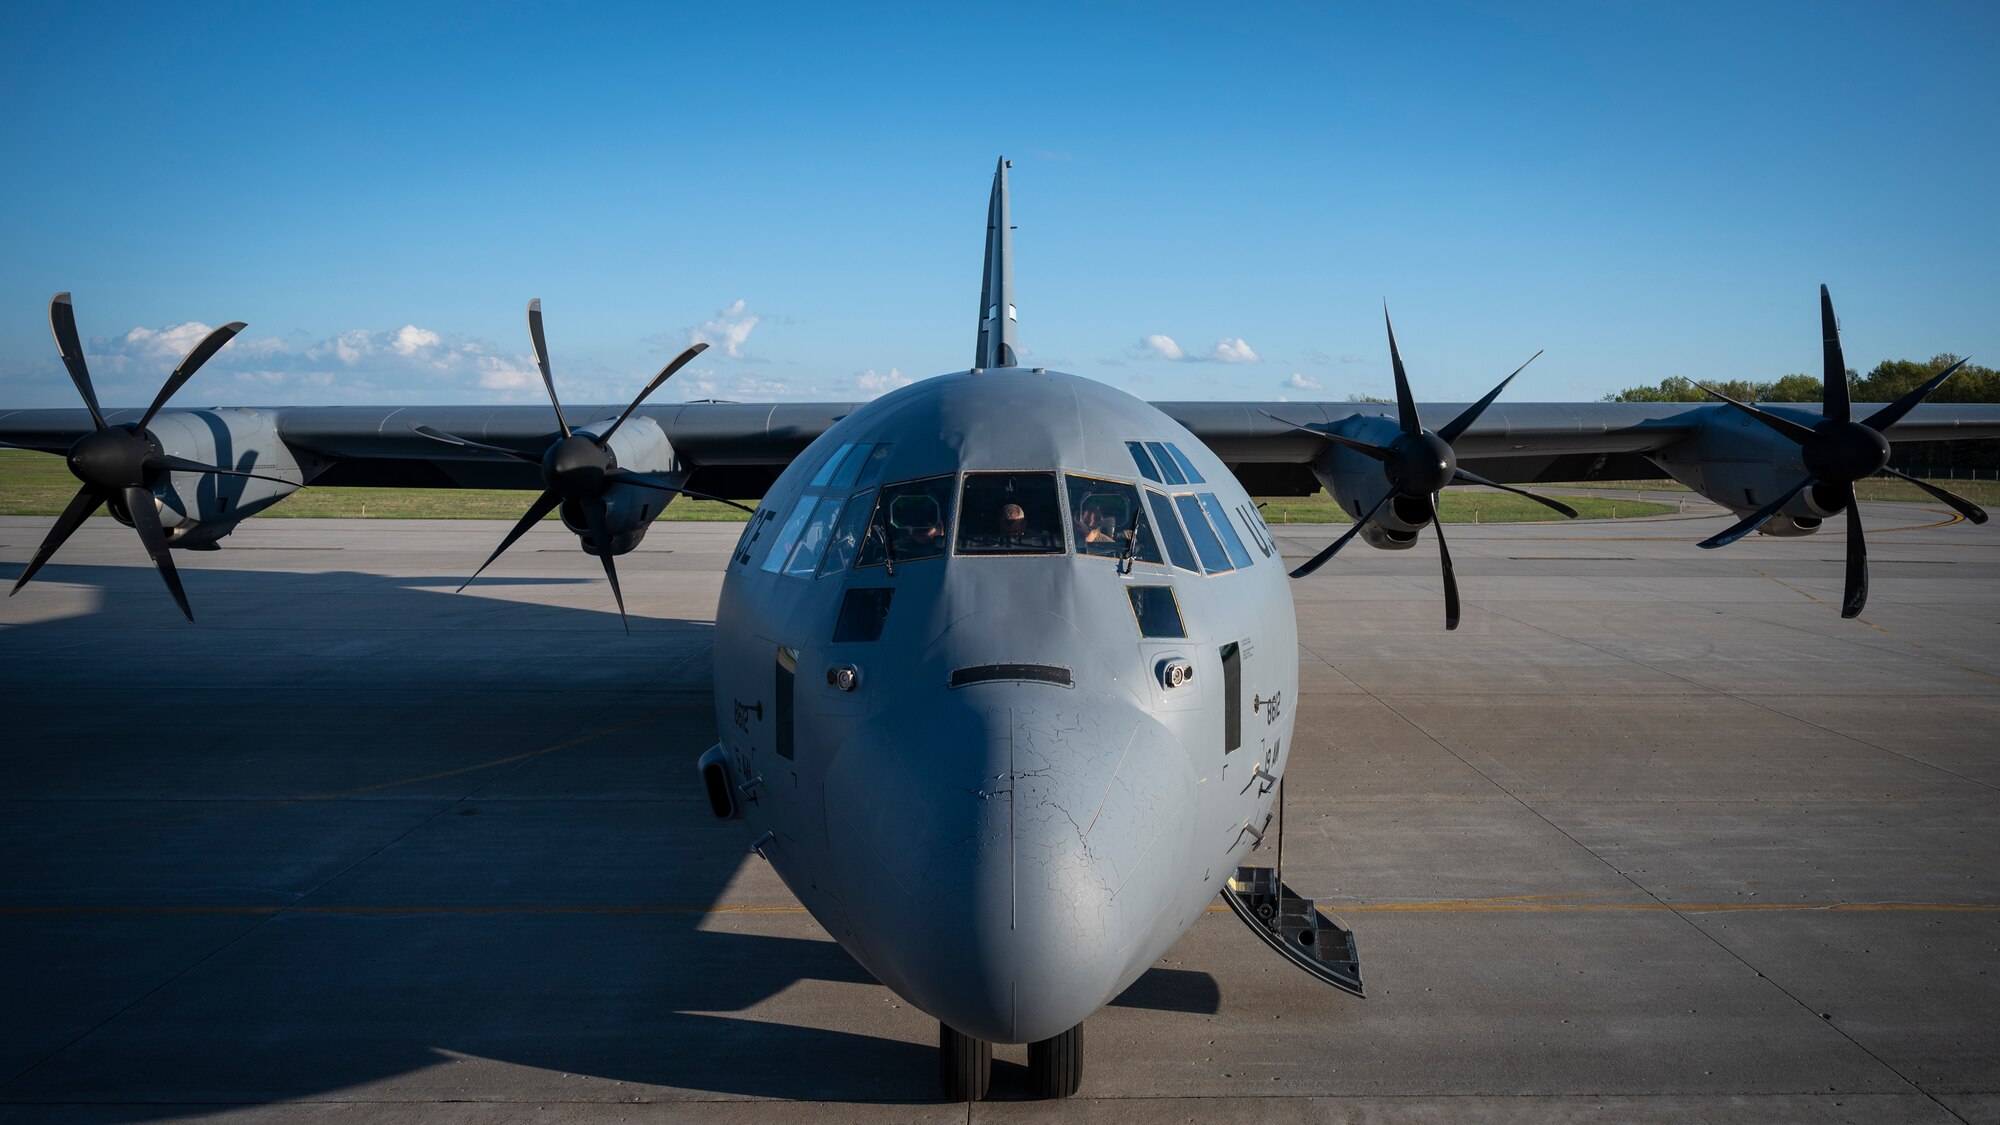 Airmen prepare pre-flight checks on a C-130J